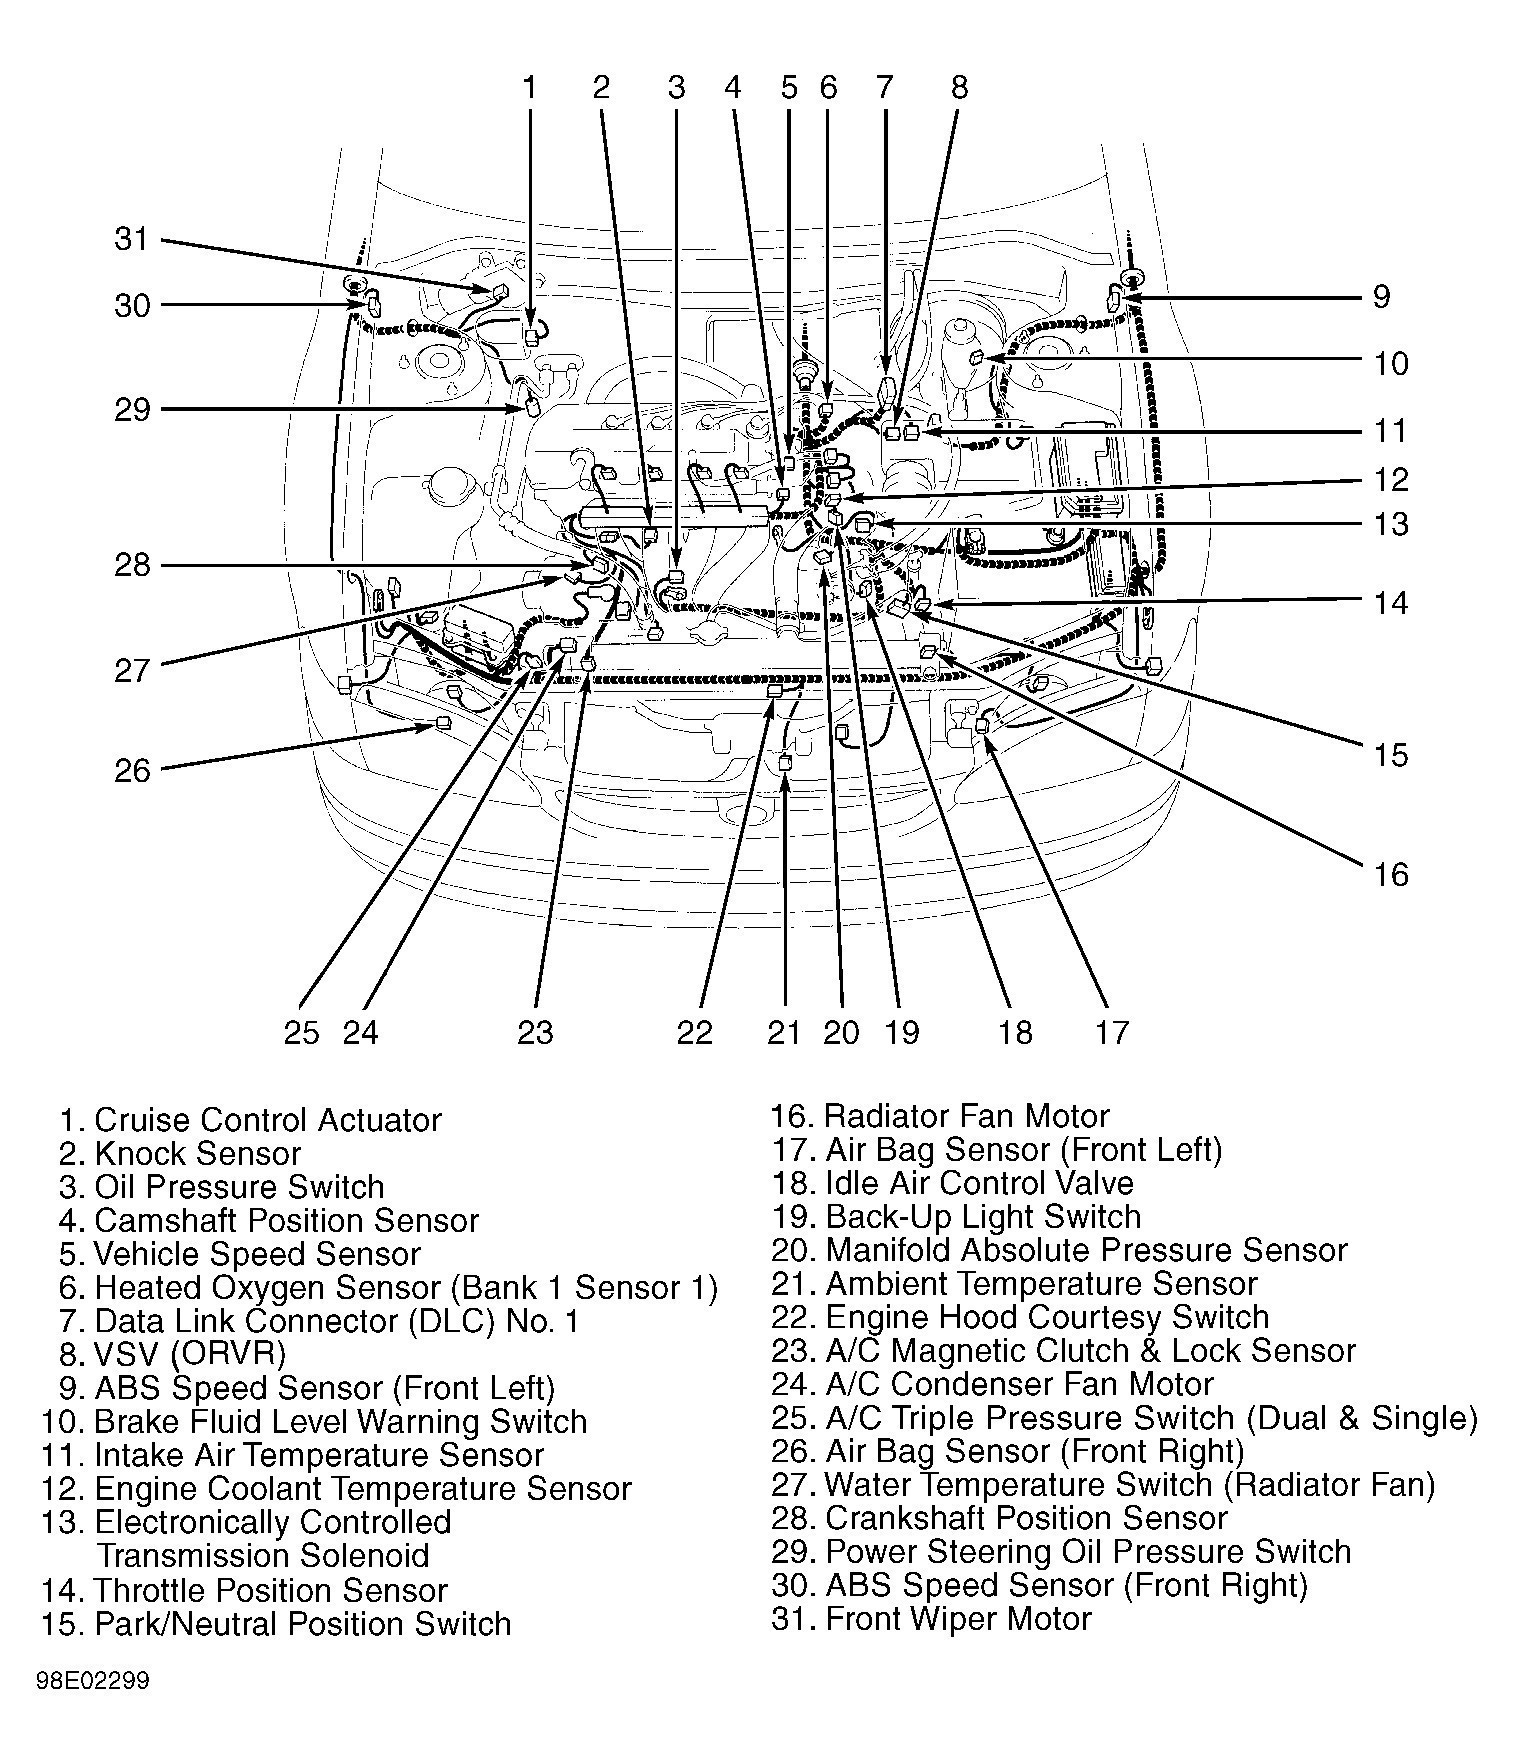 Exterior Car Door Parts Diagram â Awesome toyota Parts Barn Of Exterior Car Door Parts Diagram